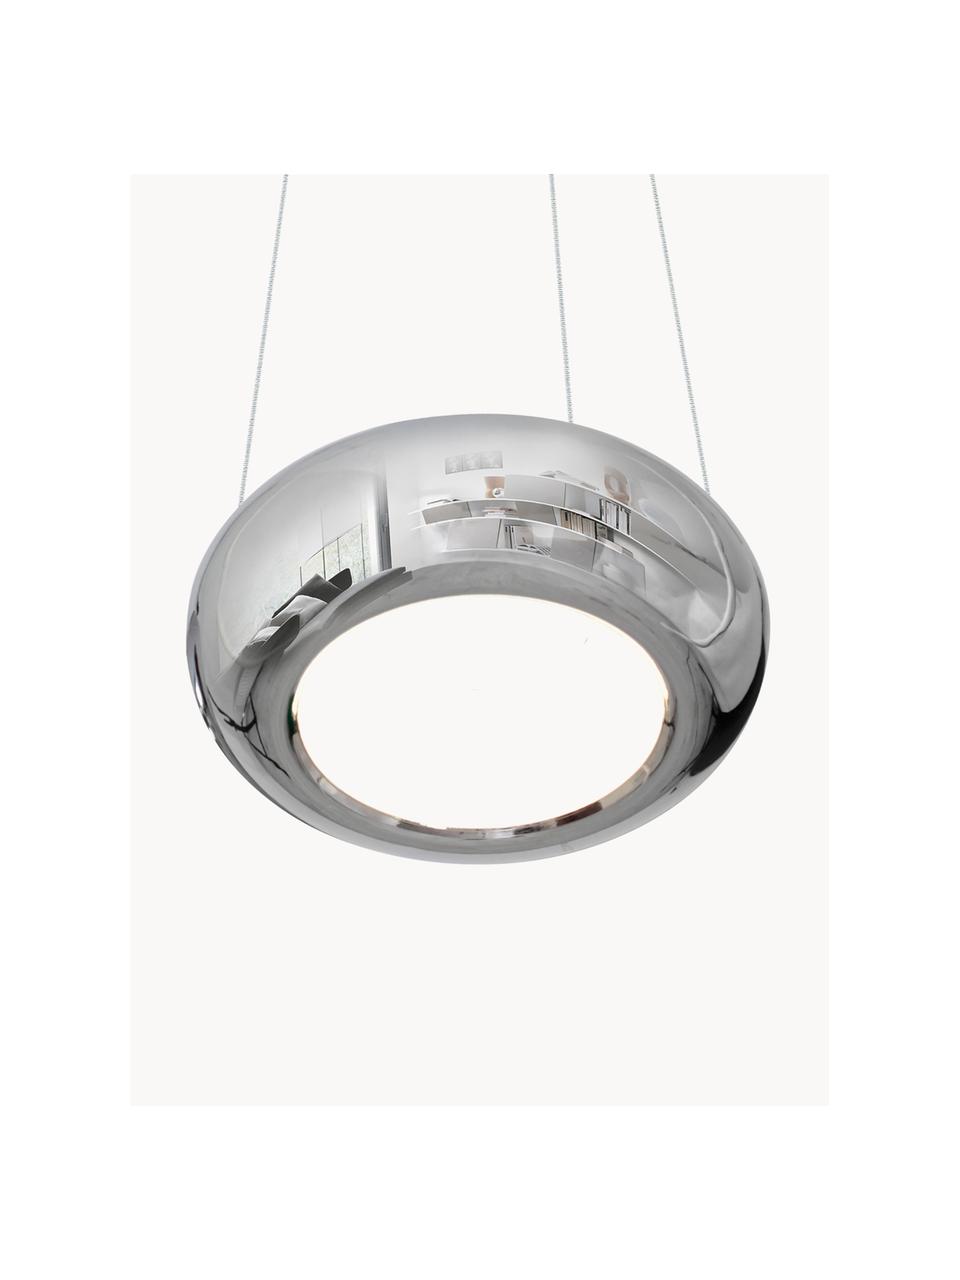 LED-Pendelleuchte Mercurio, handgefertigt, Silberfarben, Ø 28 cm